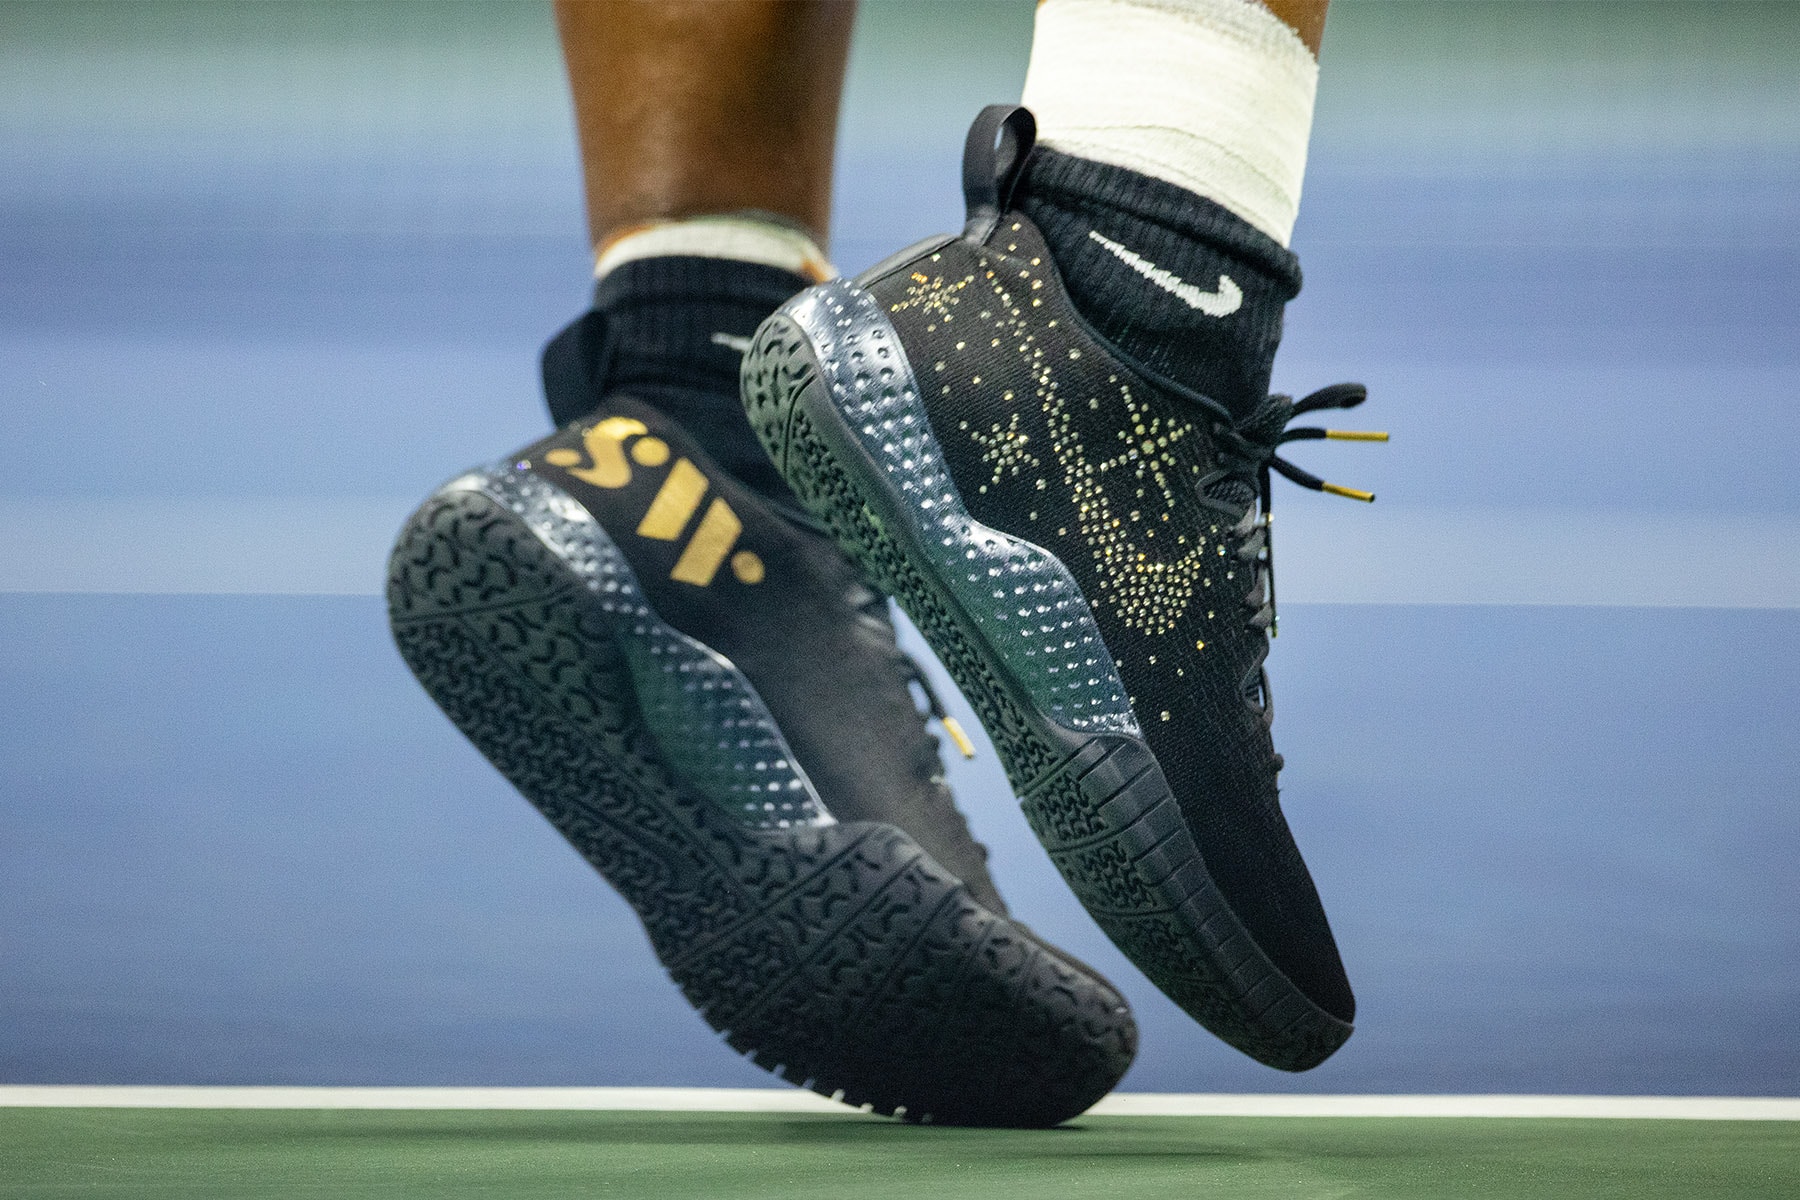 率先近賞網壇天后 Serena Williams 美國公開賽著用 Nike 服裝鞋款